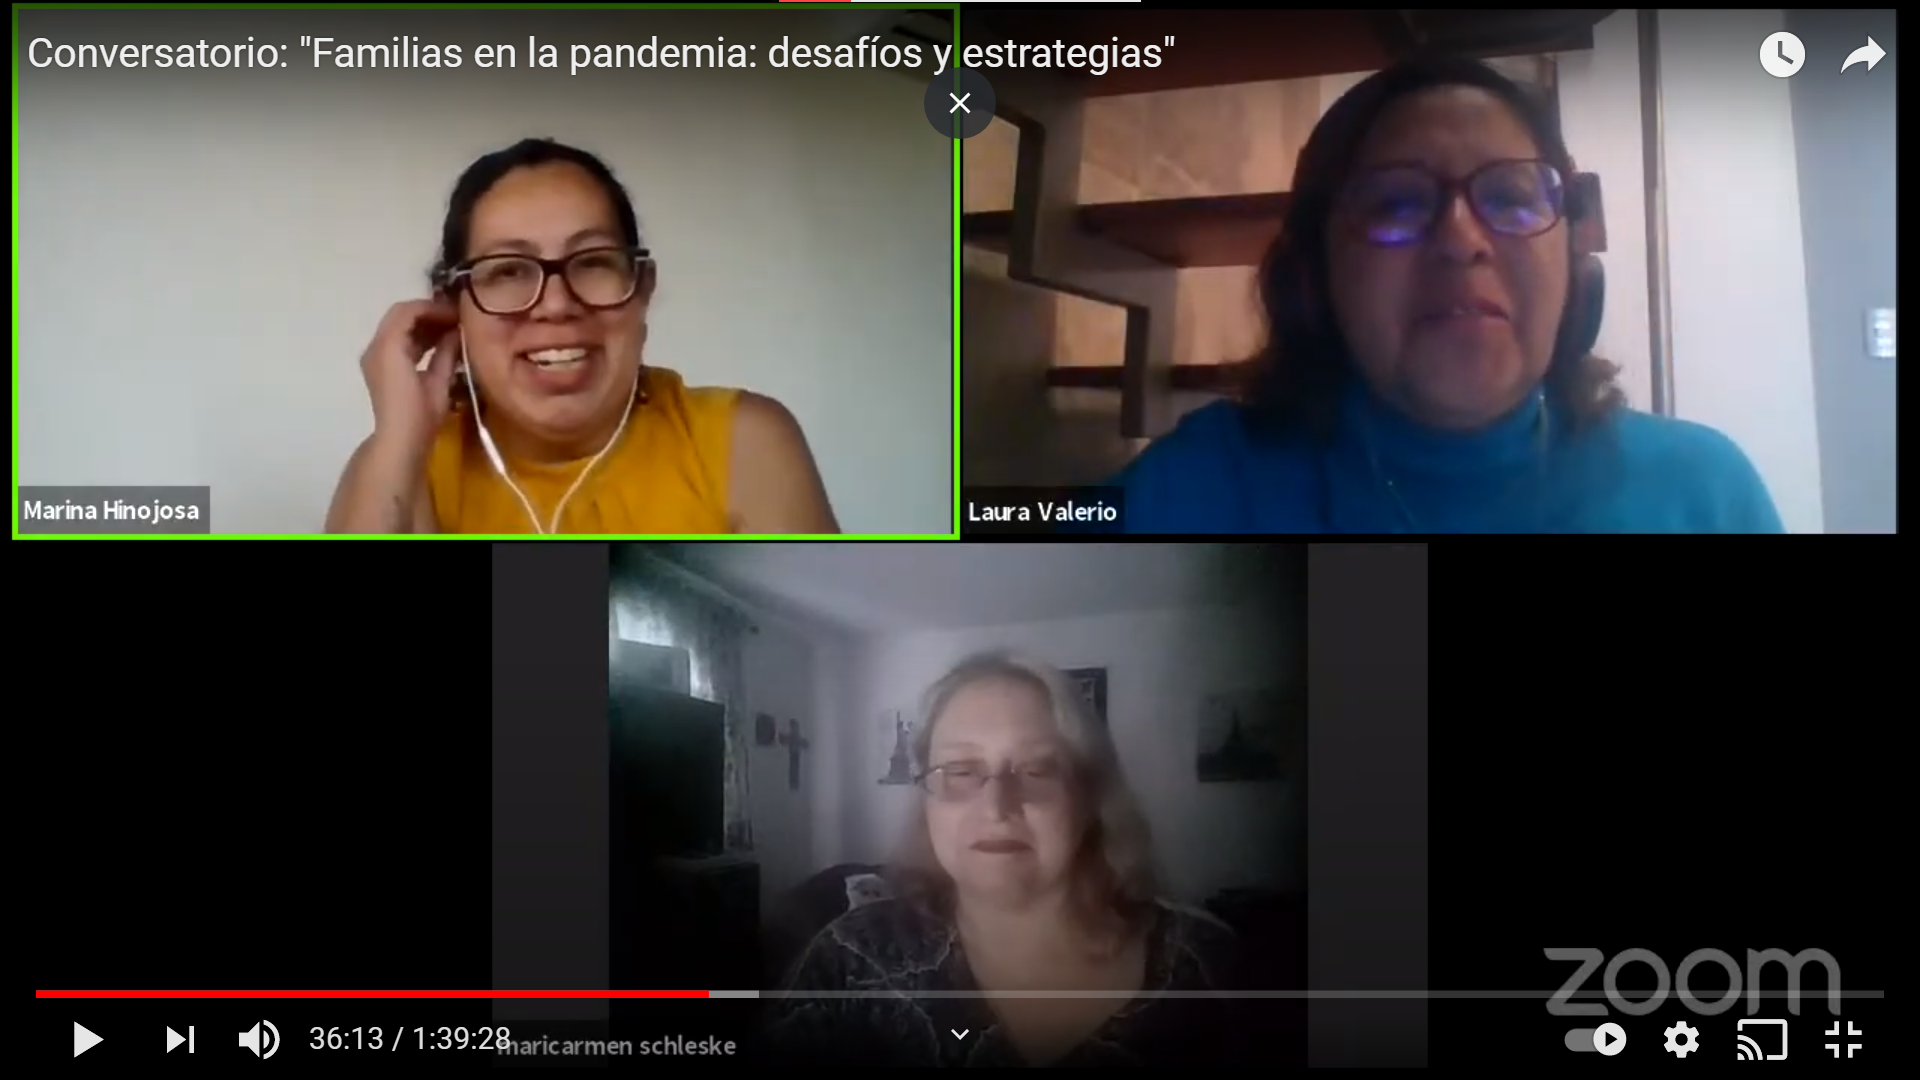 Captura de pantalla de sesión Zoom, en la imagen se ve a Marina Hinojosa, Laura Valerio y en la parte inferior Mary Carmen Schleske